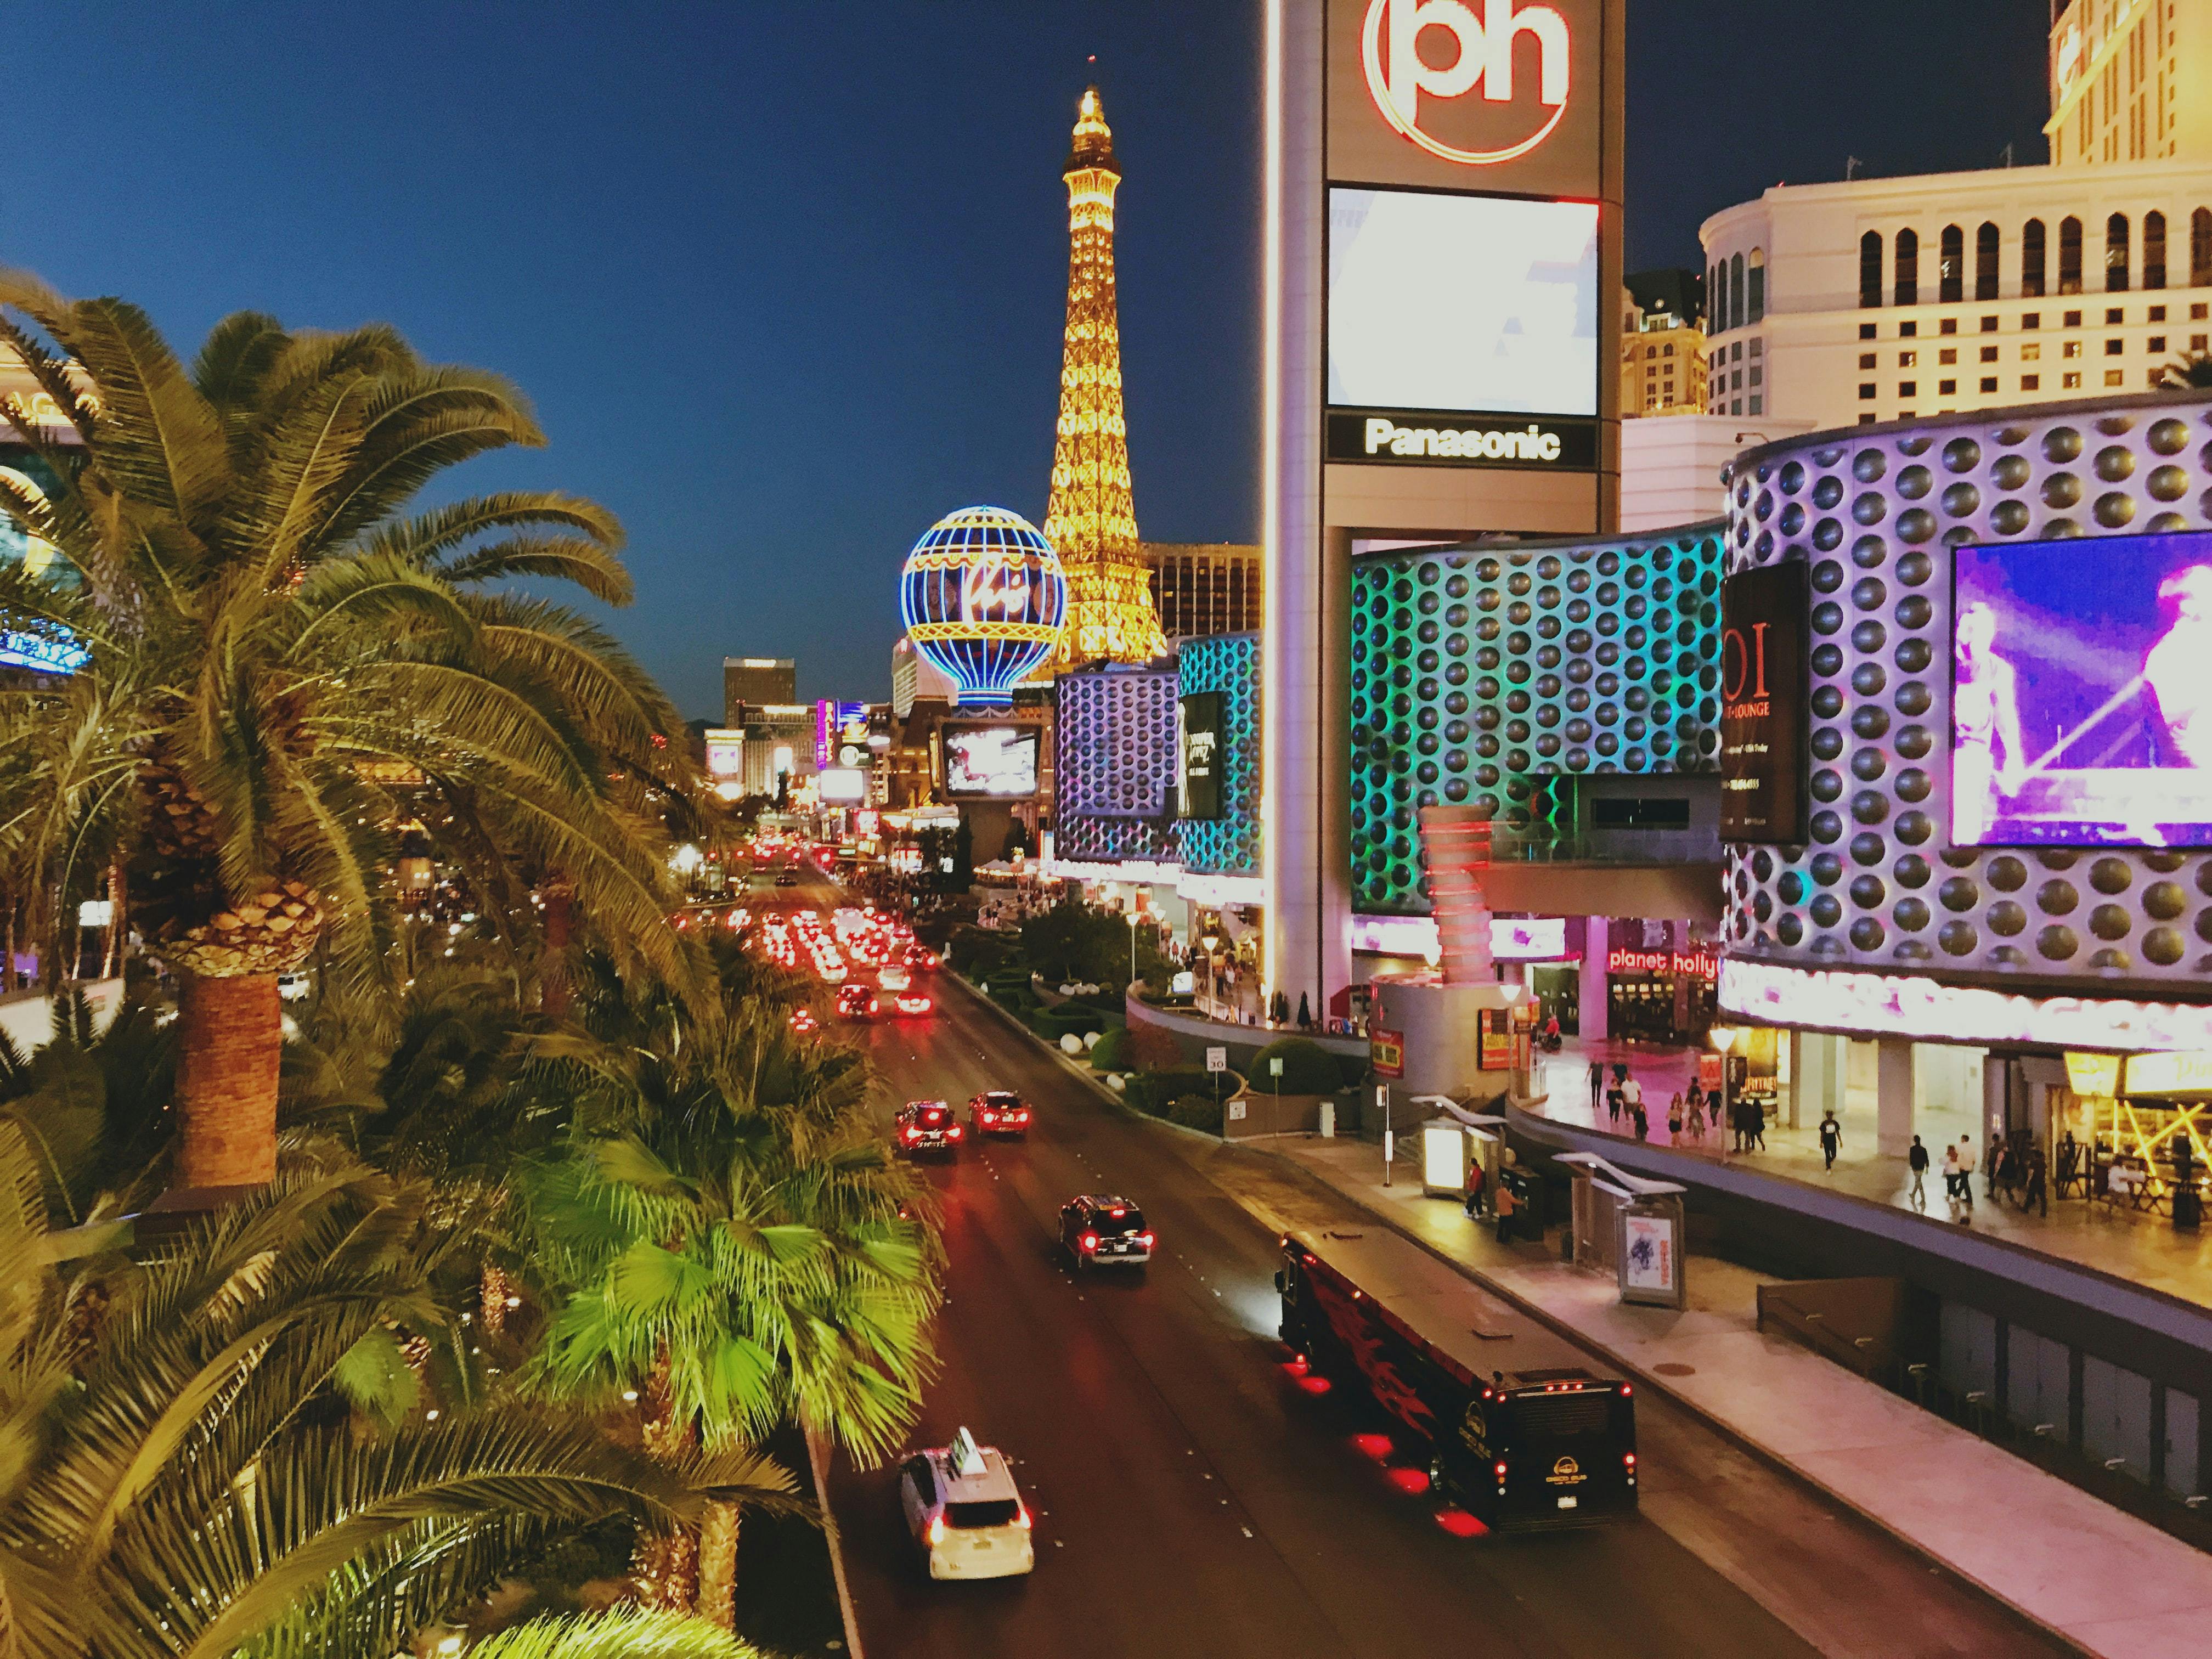 4K] Las Vegas Strip 2023 Virtual POV Walking Tour - 2 hours